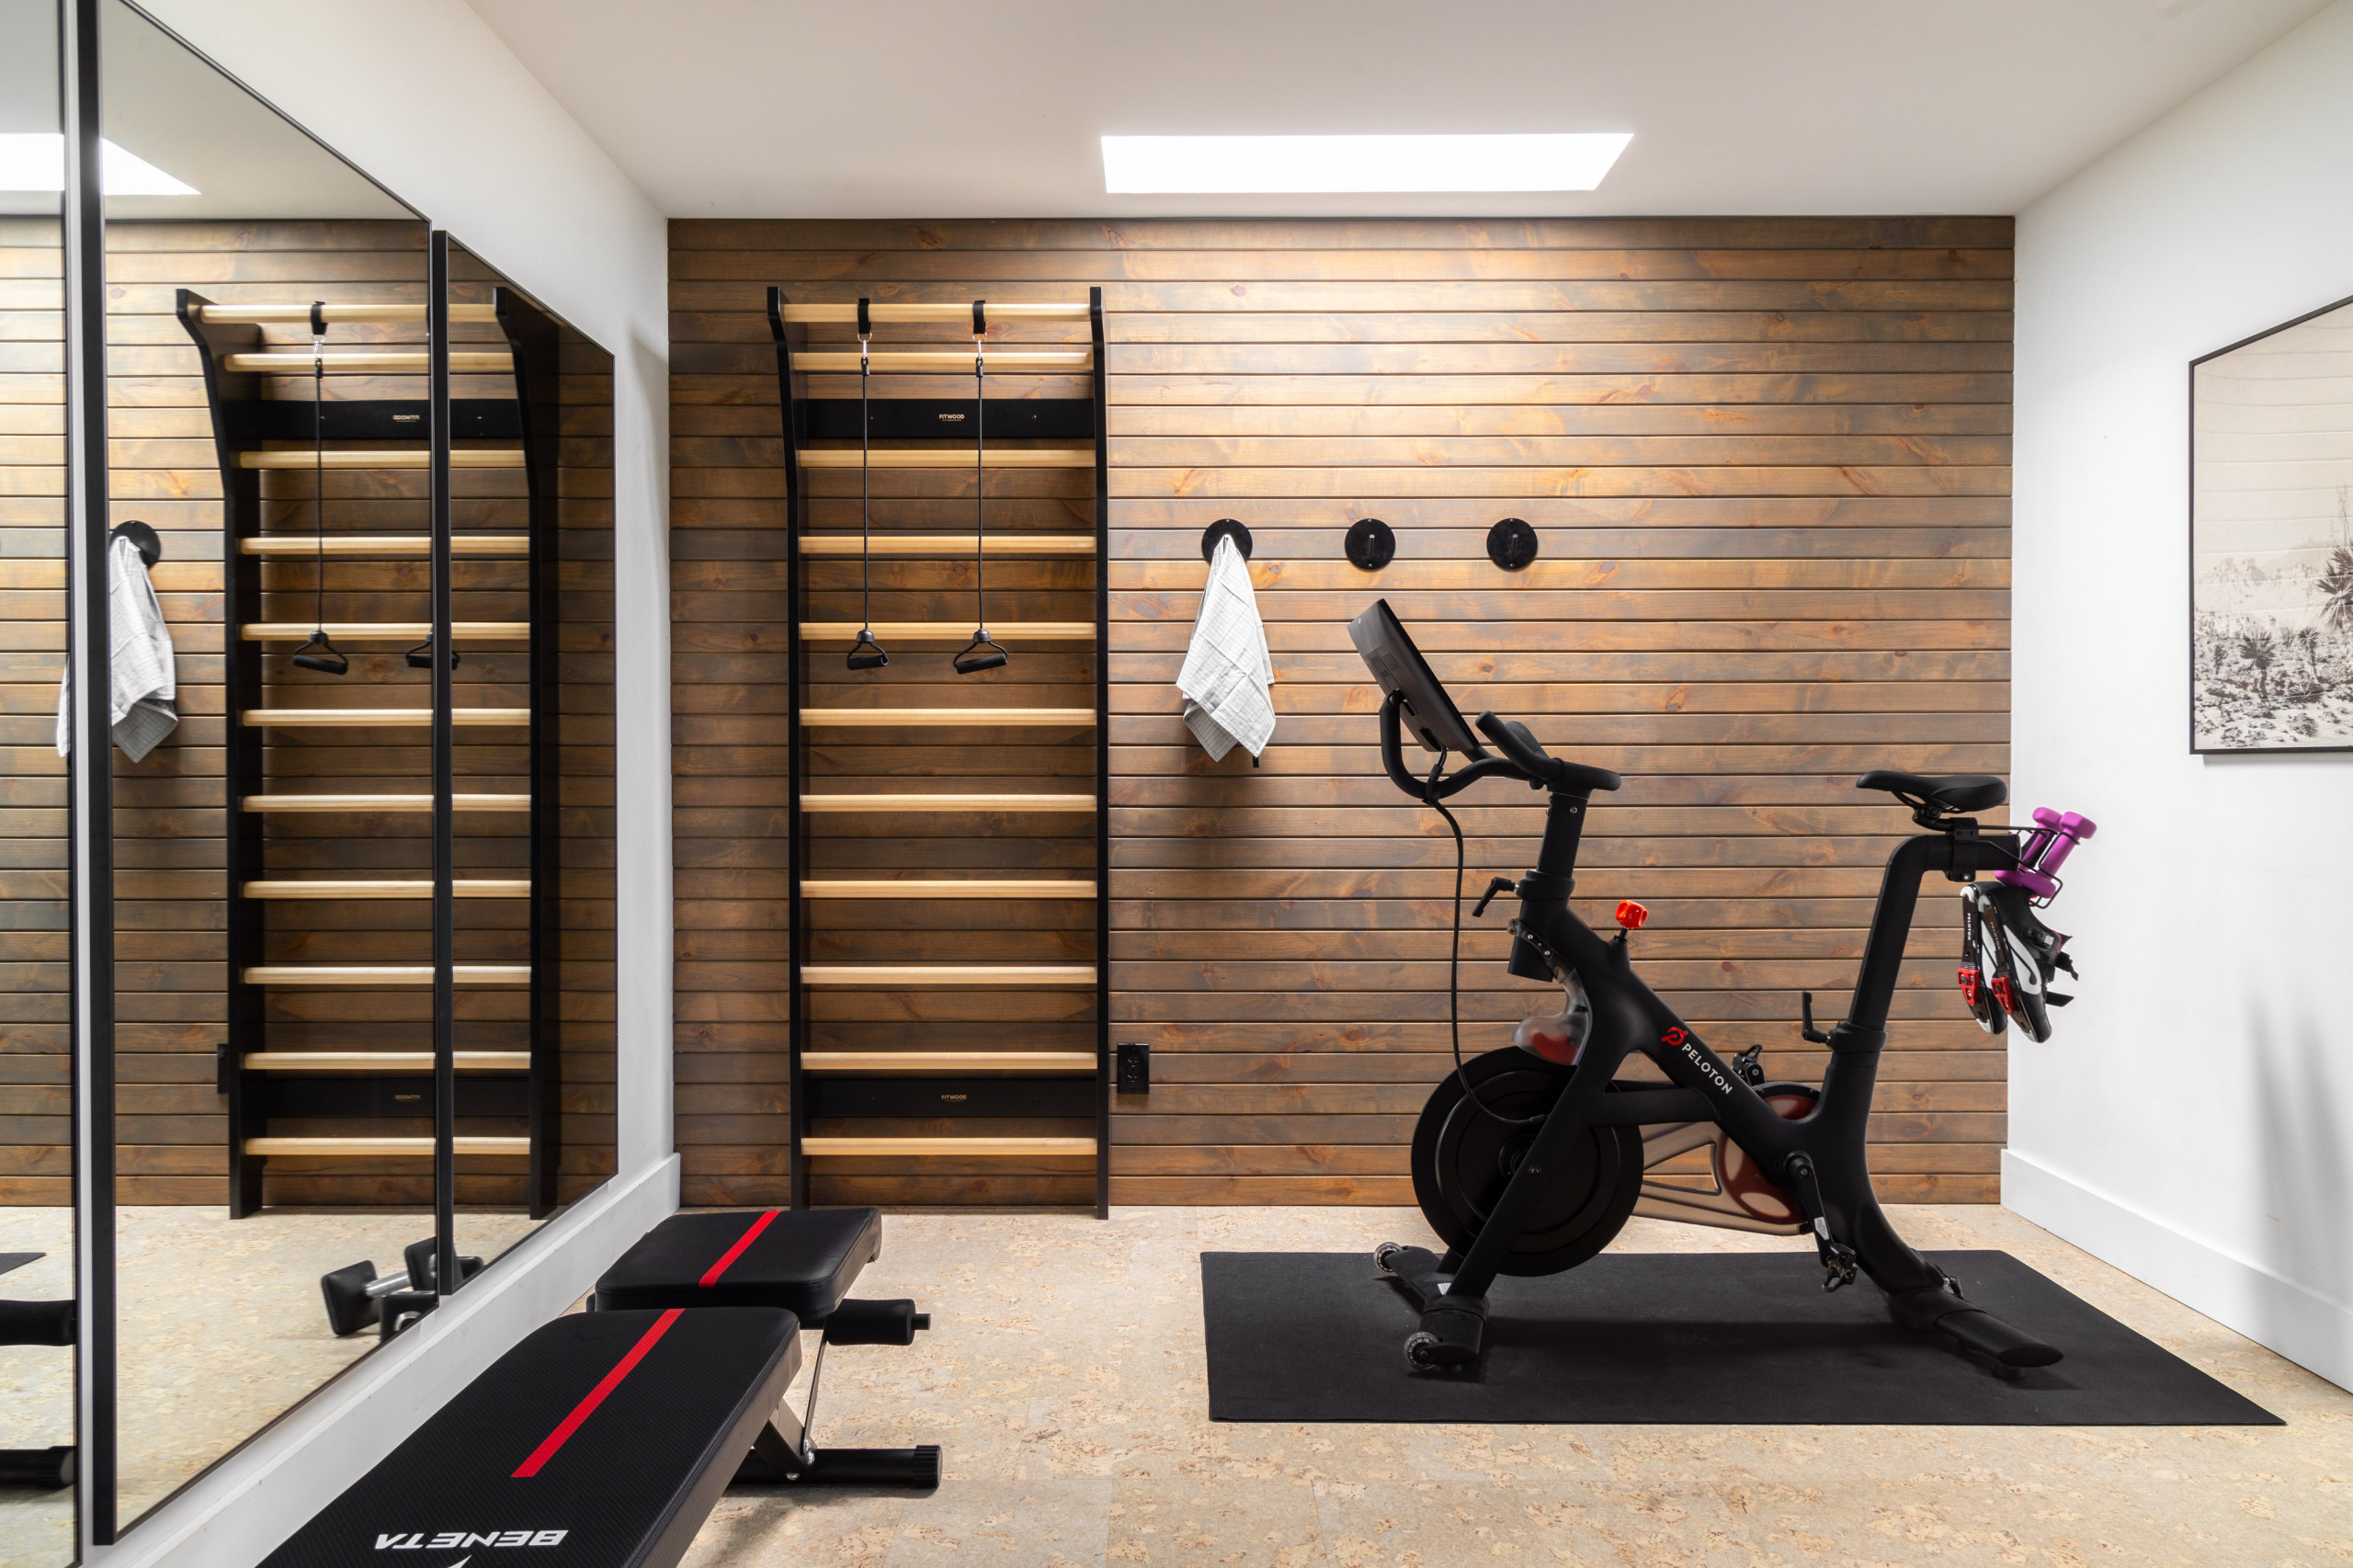 Домашние тренажерные залы в скандинавском стиле – 55 лучших фото-идей дизайна спортивной комнаты дома